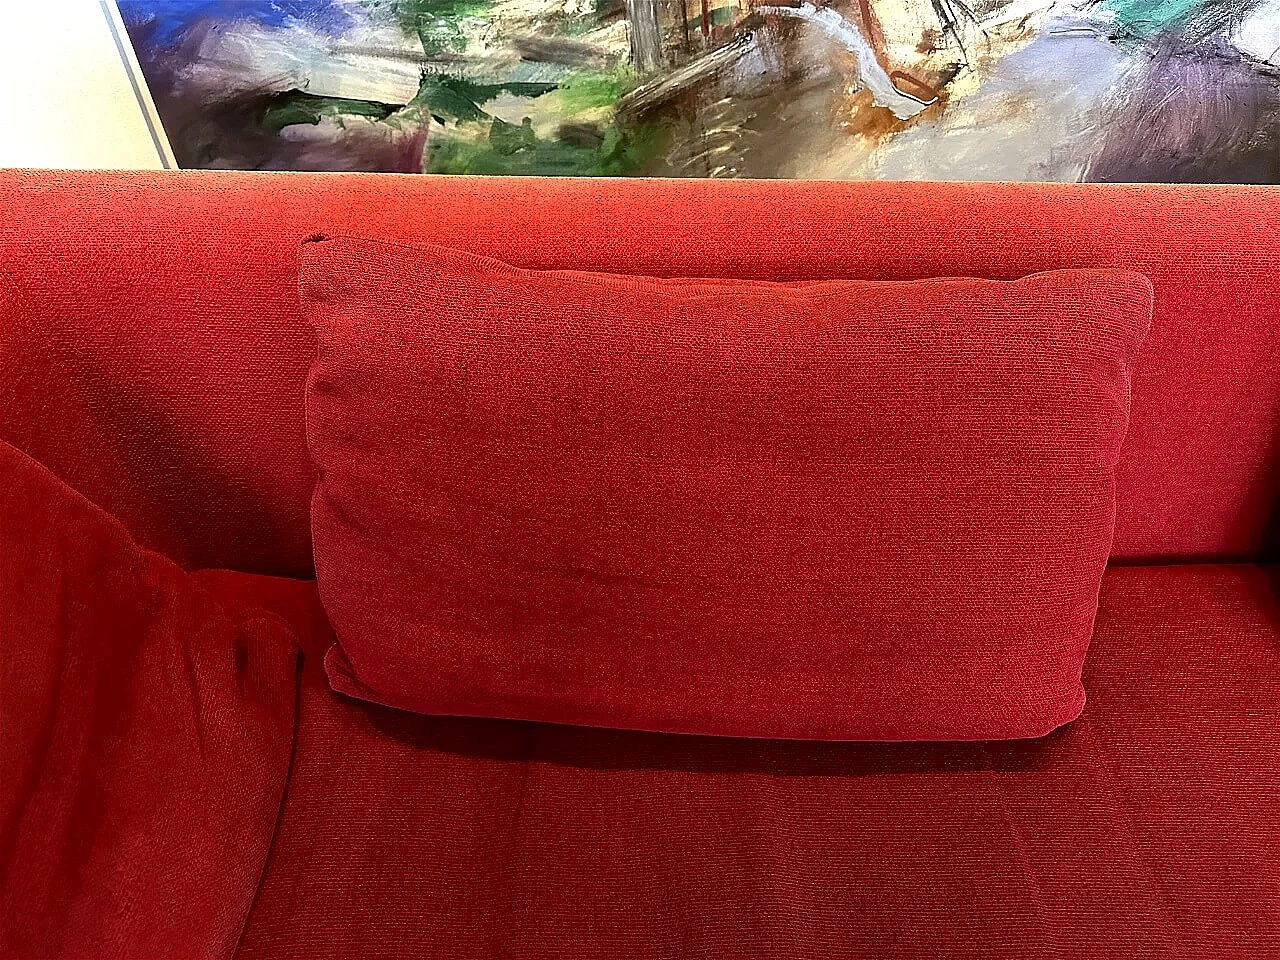 CH228 Charles sofa in red Maxalto-Cat cotton by Antonio Citterio for B&B Italia 22